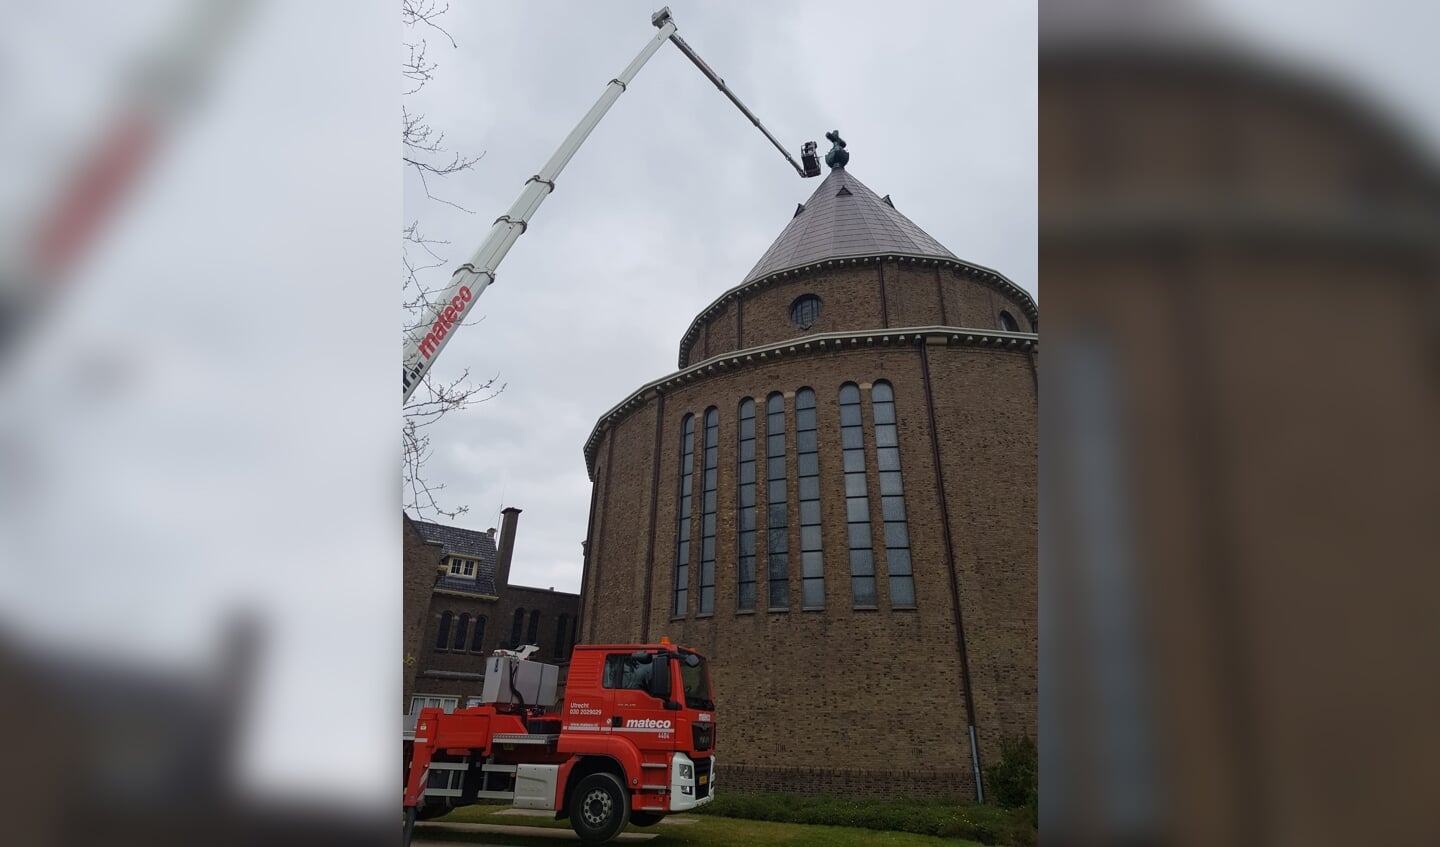 Een kraan van 75 meter hoog werd aangerukt om het licht in het kruis van de Cultuurkoepel te repareren. 